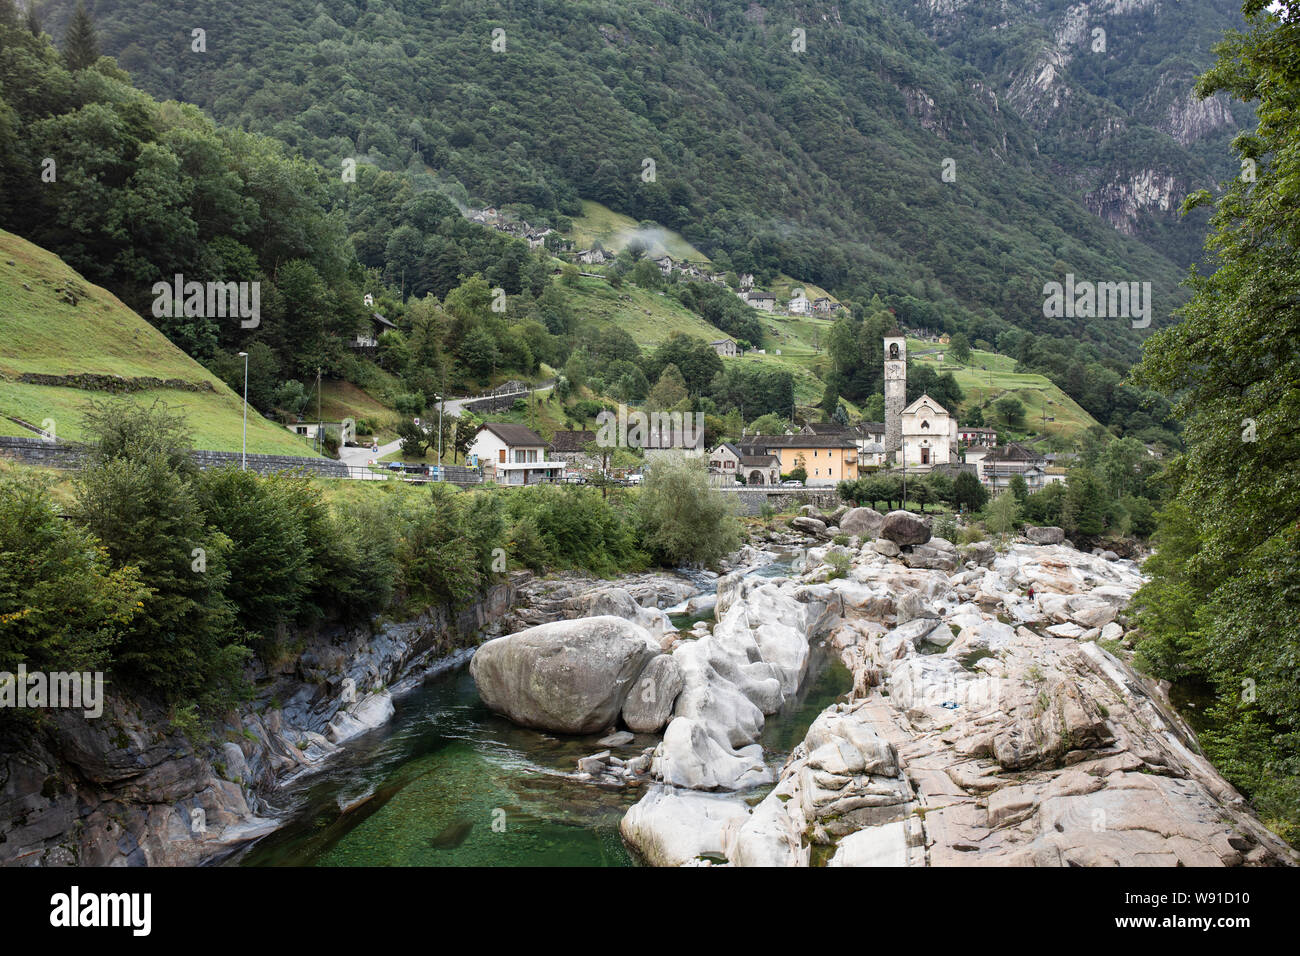 La vallée de Verzasca river et, en regardant vers la ville de Lavertezzo et son église de Santa Maria degli Angeli, dans la région du Tessin en Suisse. Banque D'Images